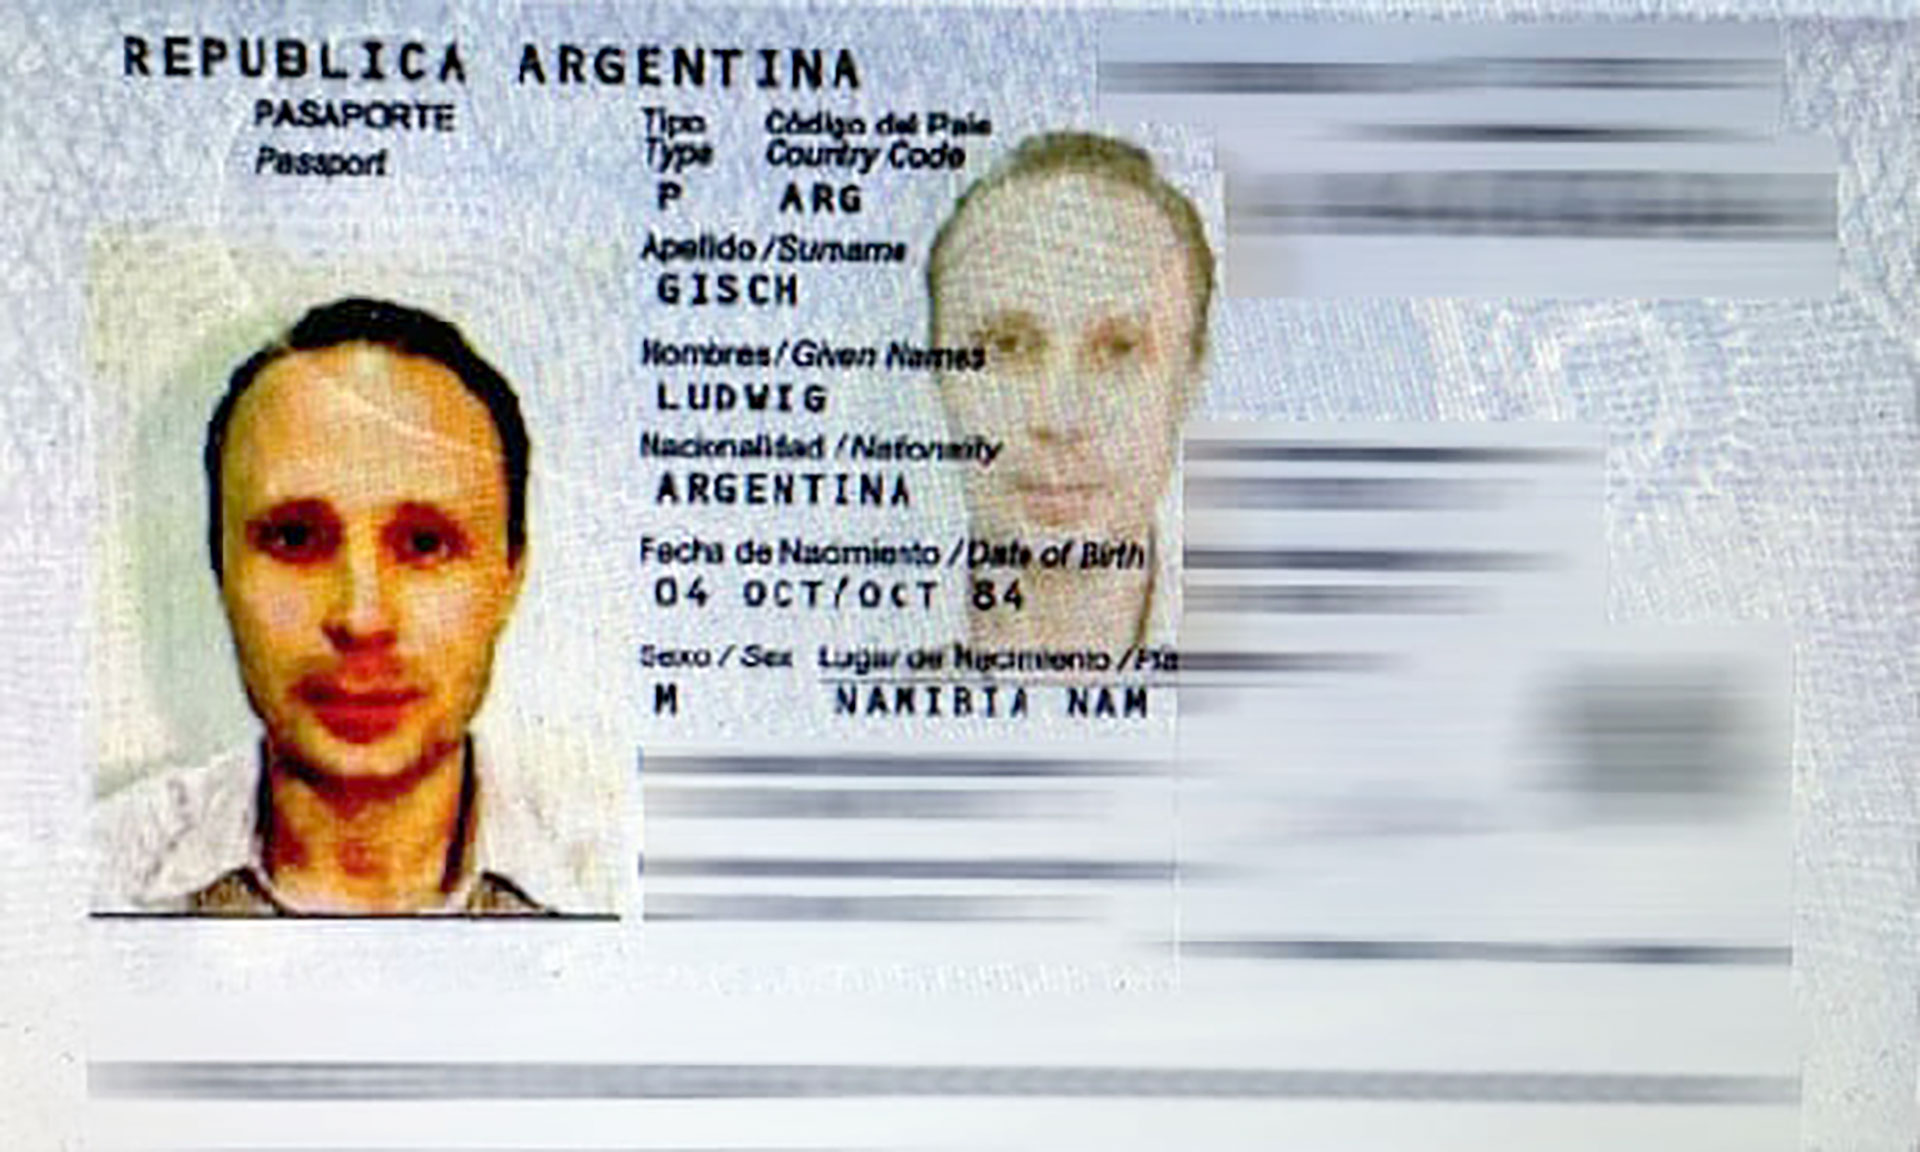 El pasaporte argentino de Gisch, nacido en Namibia